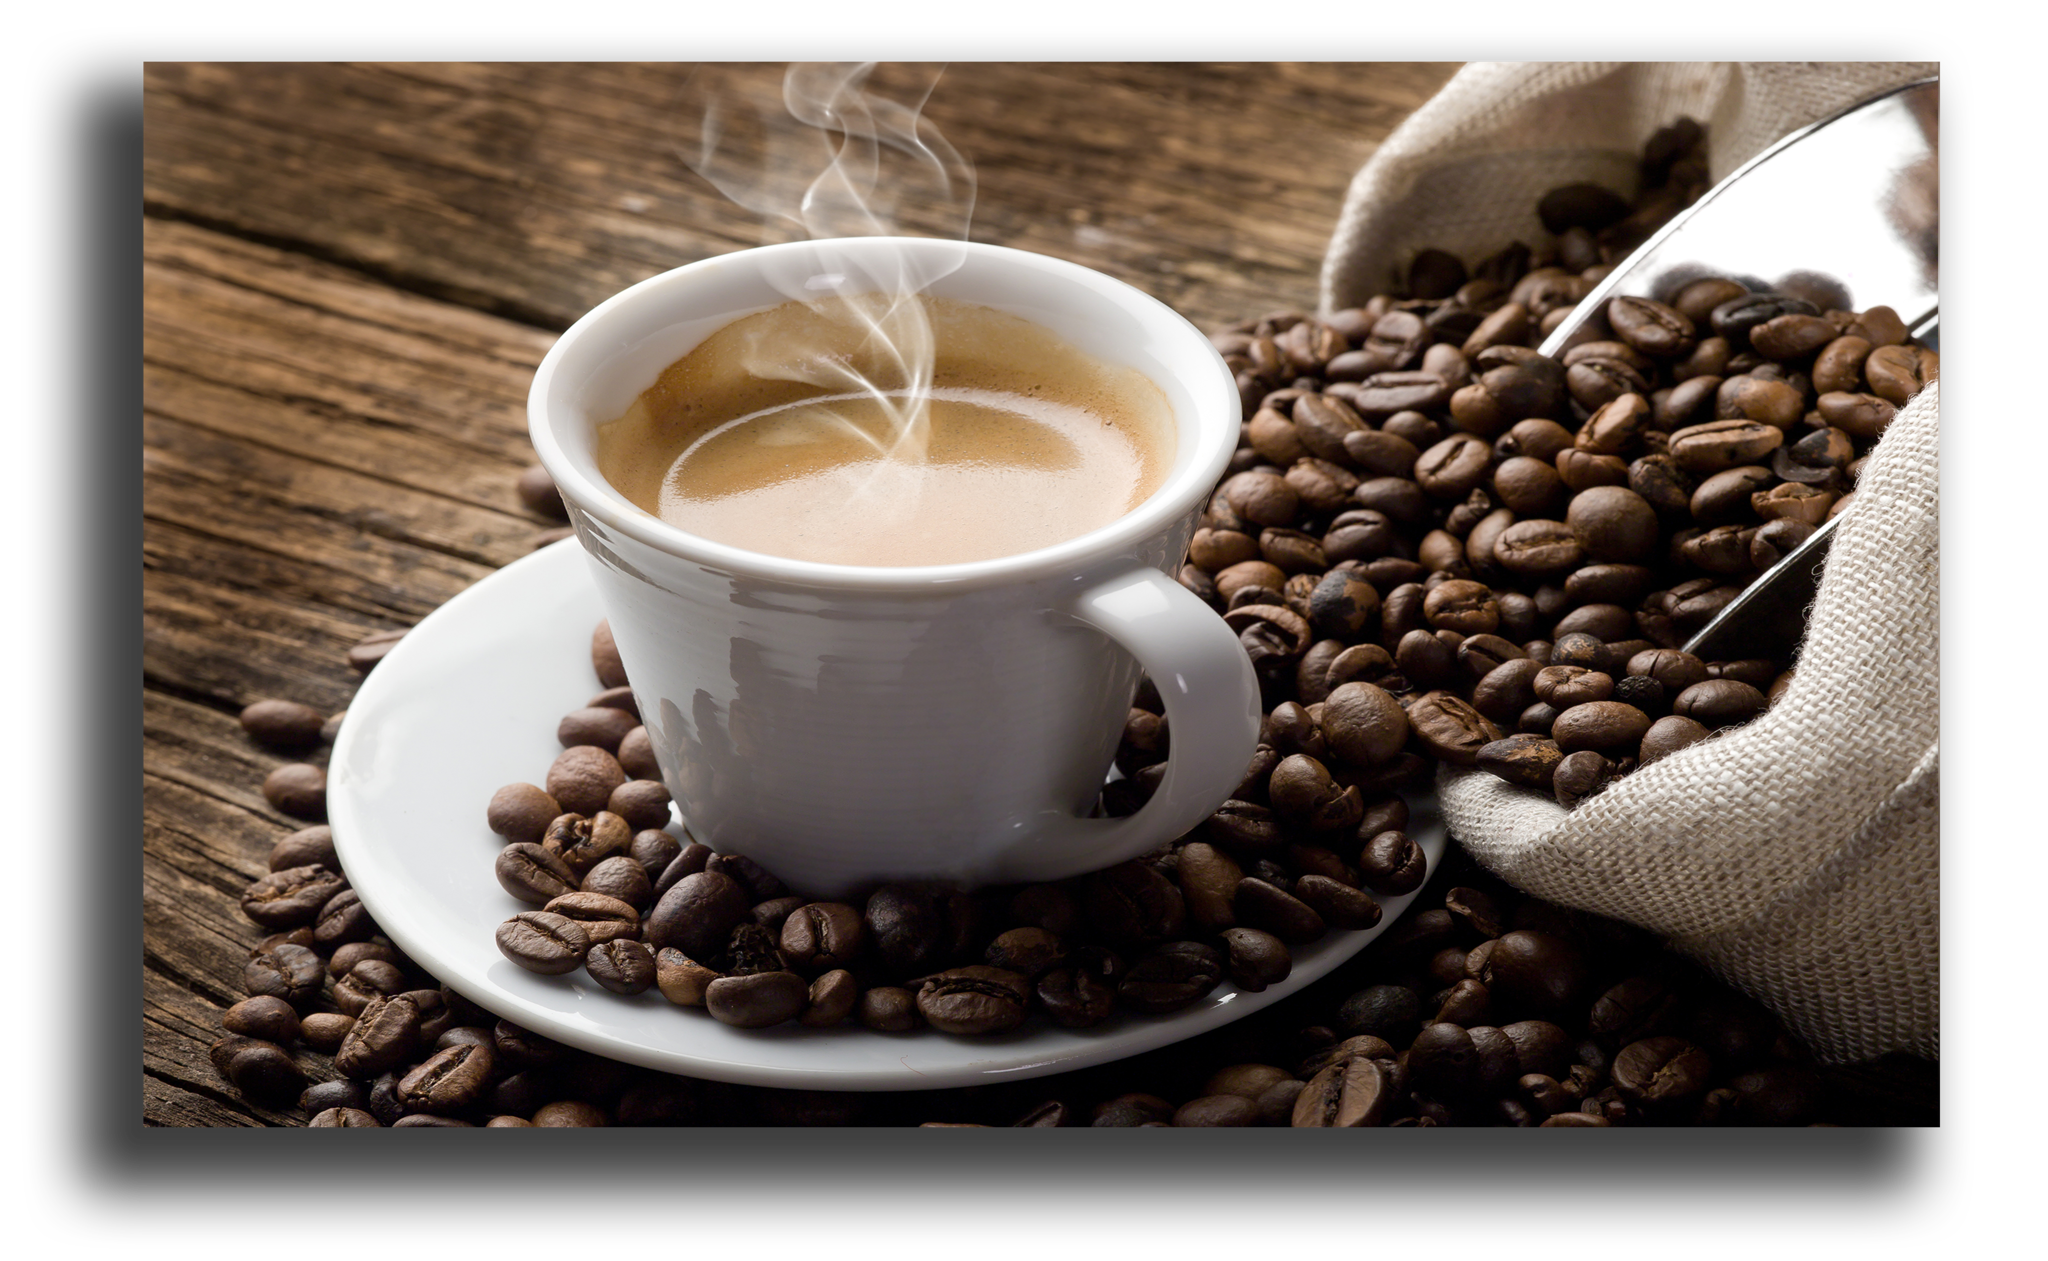 Стаканчики для кофе и кофейных напитков: как правильно выбрать